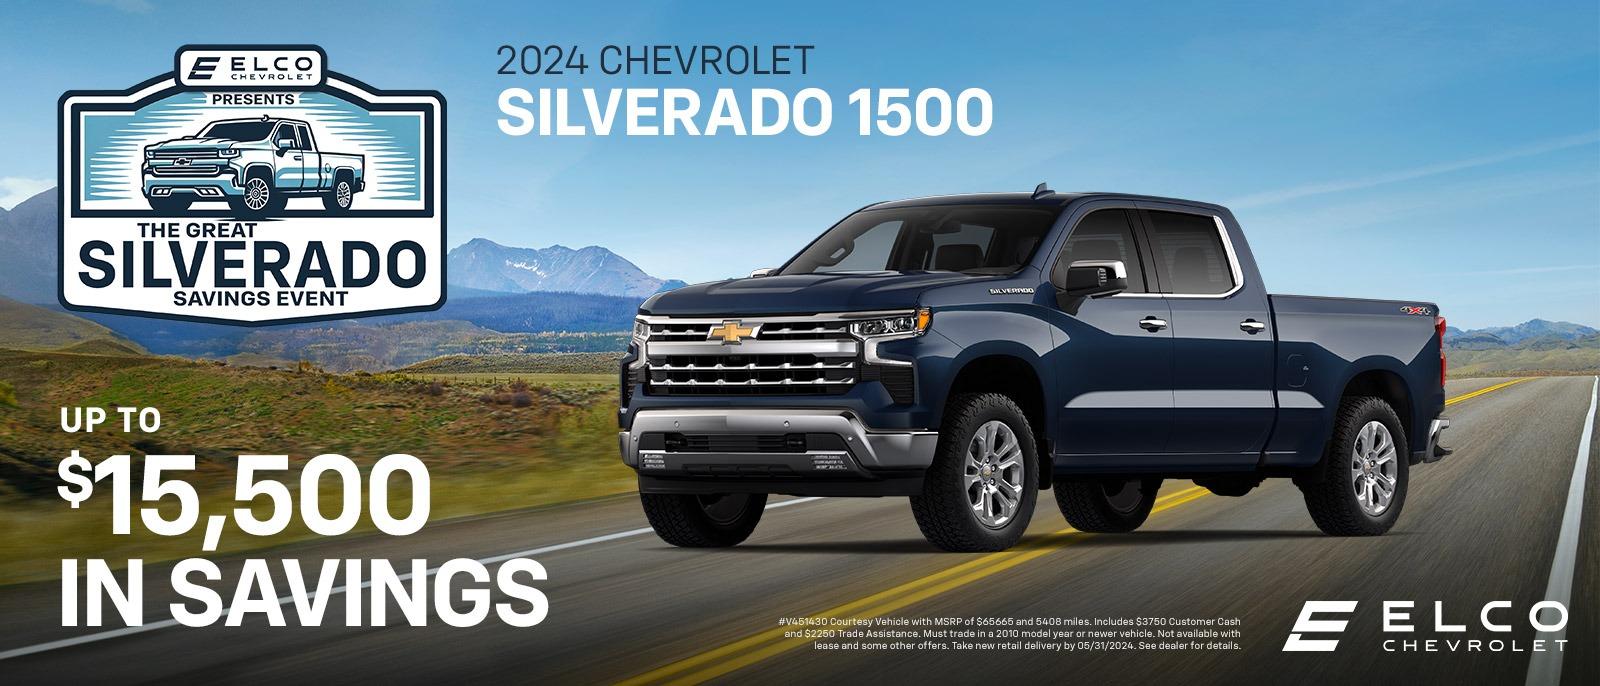 2024 Chevrolet Silverado 1500 Savings | Ballwin, MO